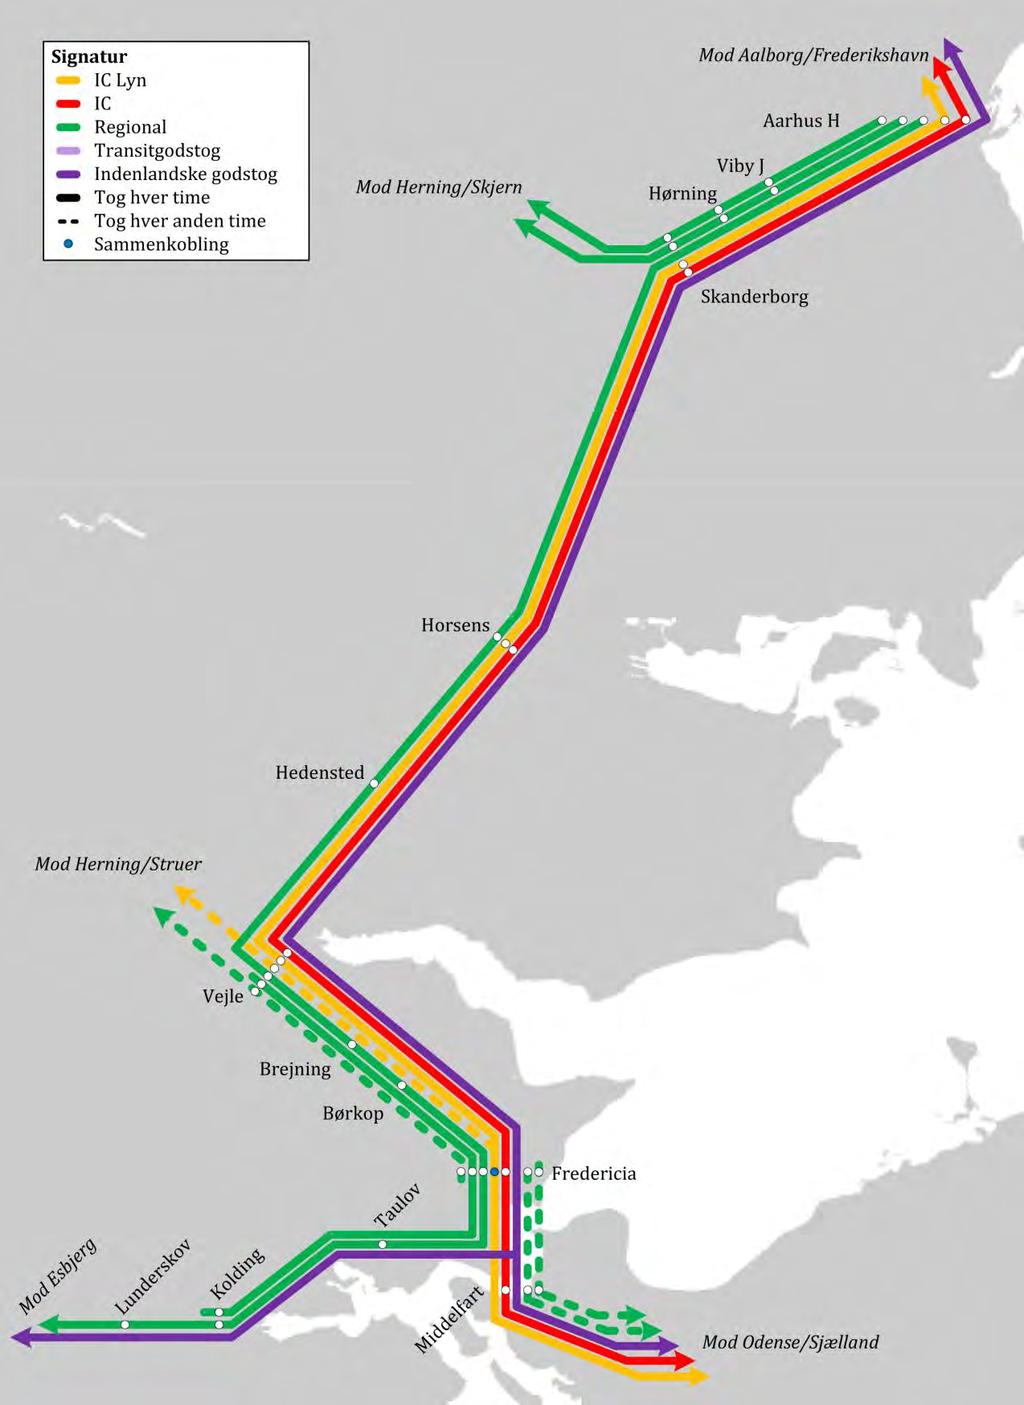 3 Gennemgang af strækningen Odense-Aarhus 3.3.2 Østjylland I Østjylland betjenes strækningen mellem Snoghøj og Aarhus H på følgende måde i dagtimerne i køreplanen for 2012 (figur 3.